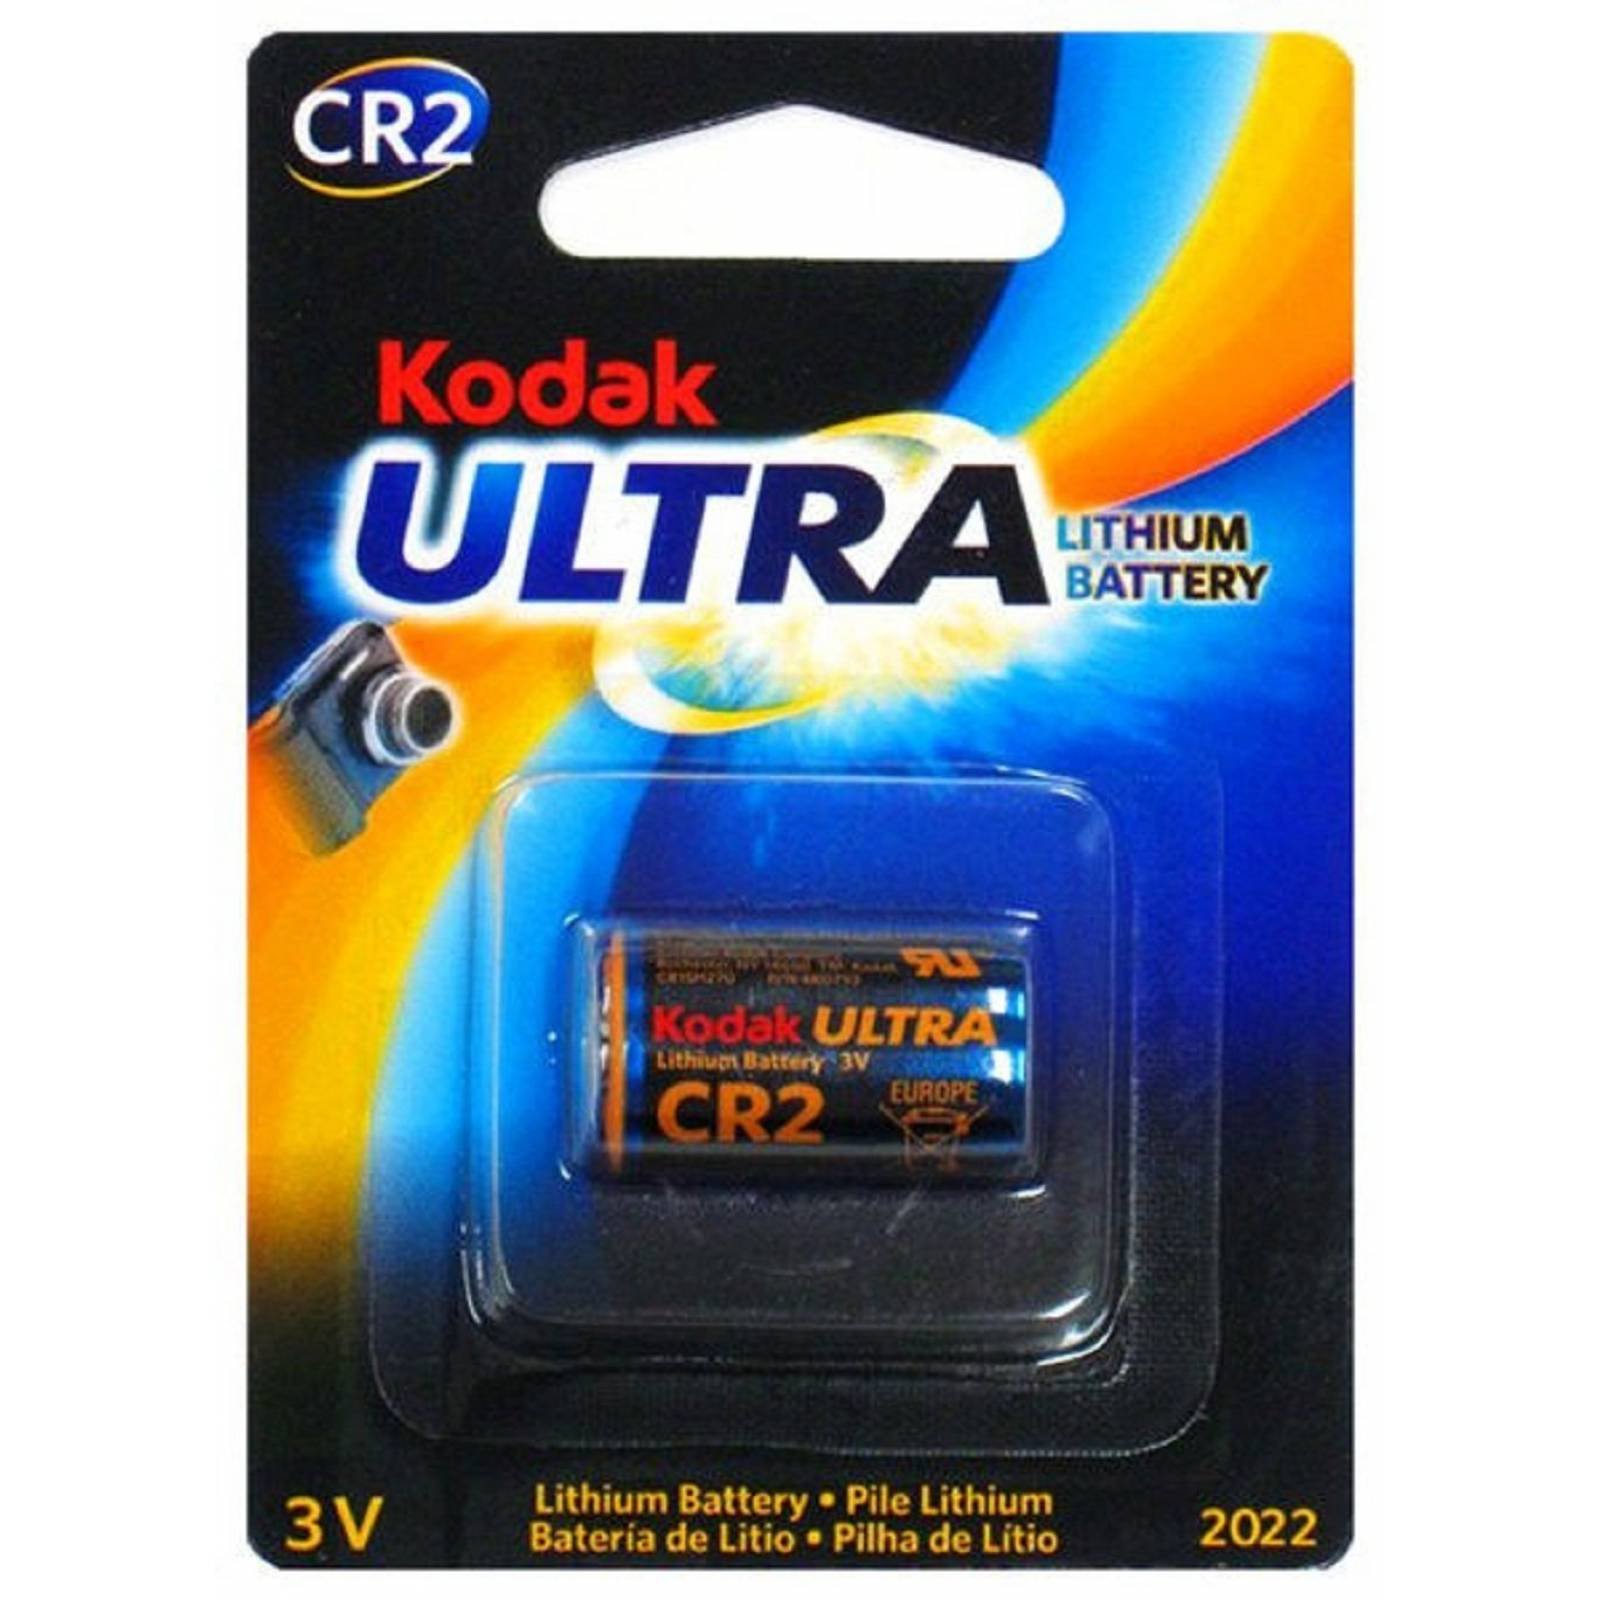 Kodak Max CR2 3V -1 batería de litio